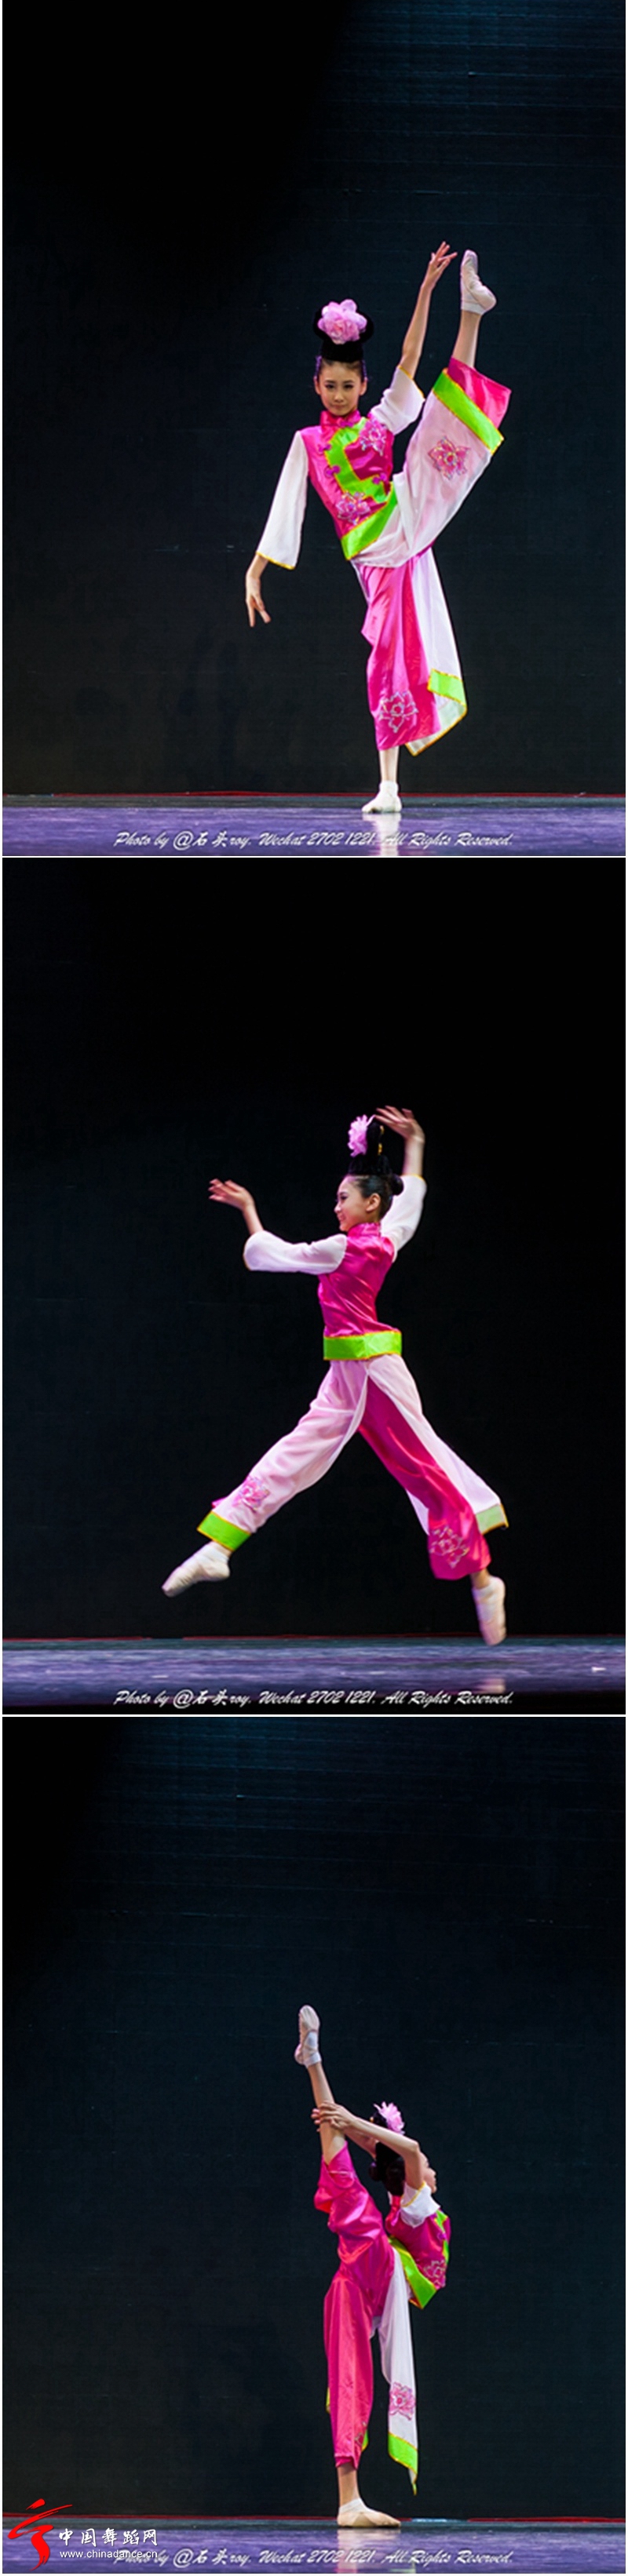 上海舞蹈学校“舞苑杯”比赛09.jpg